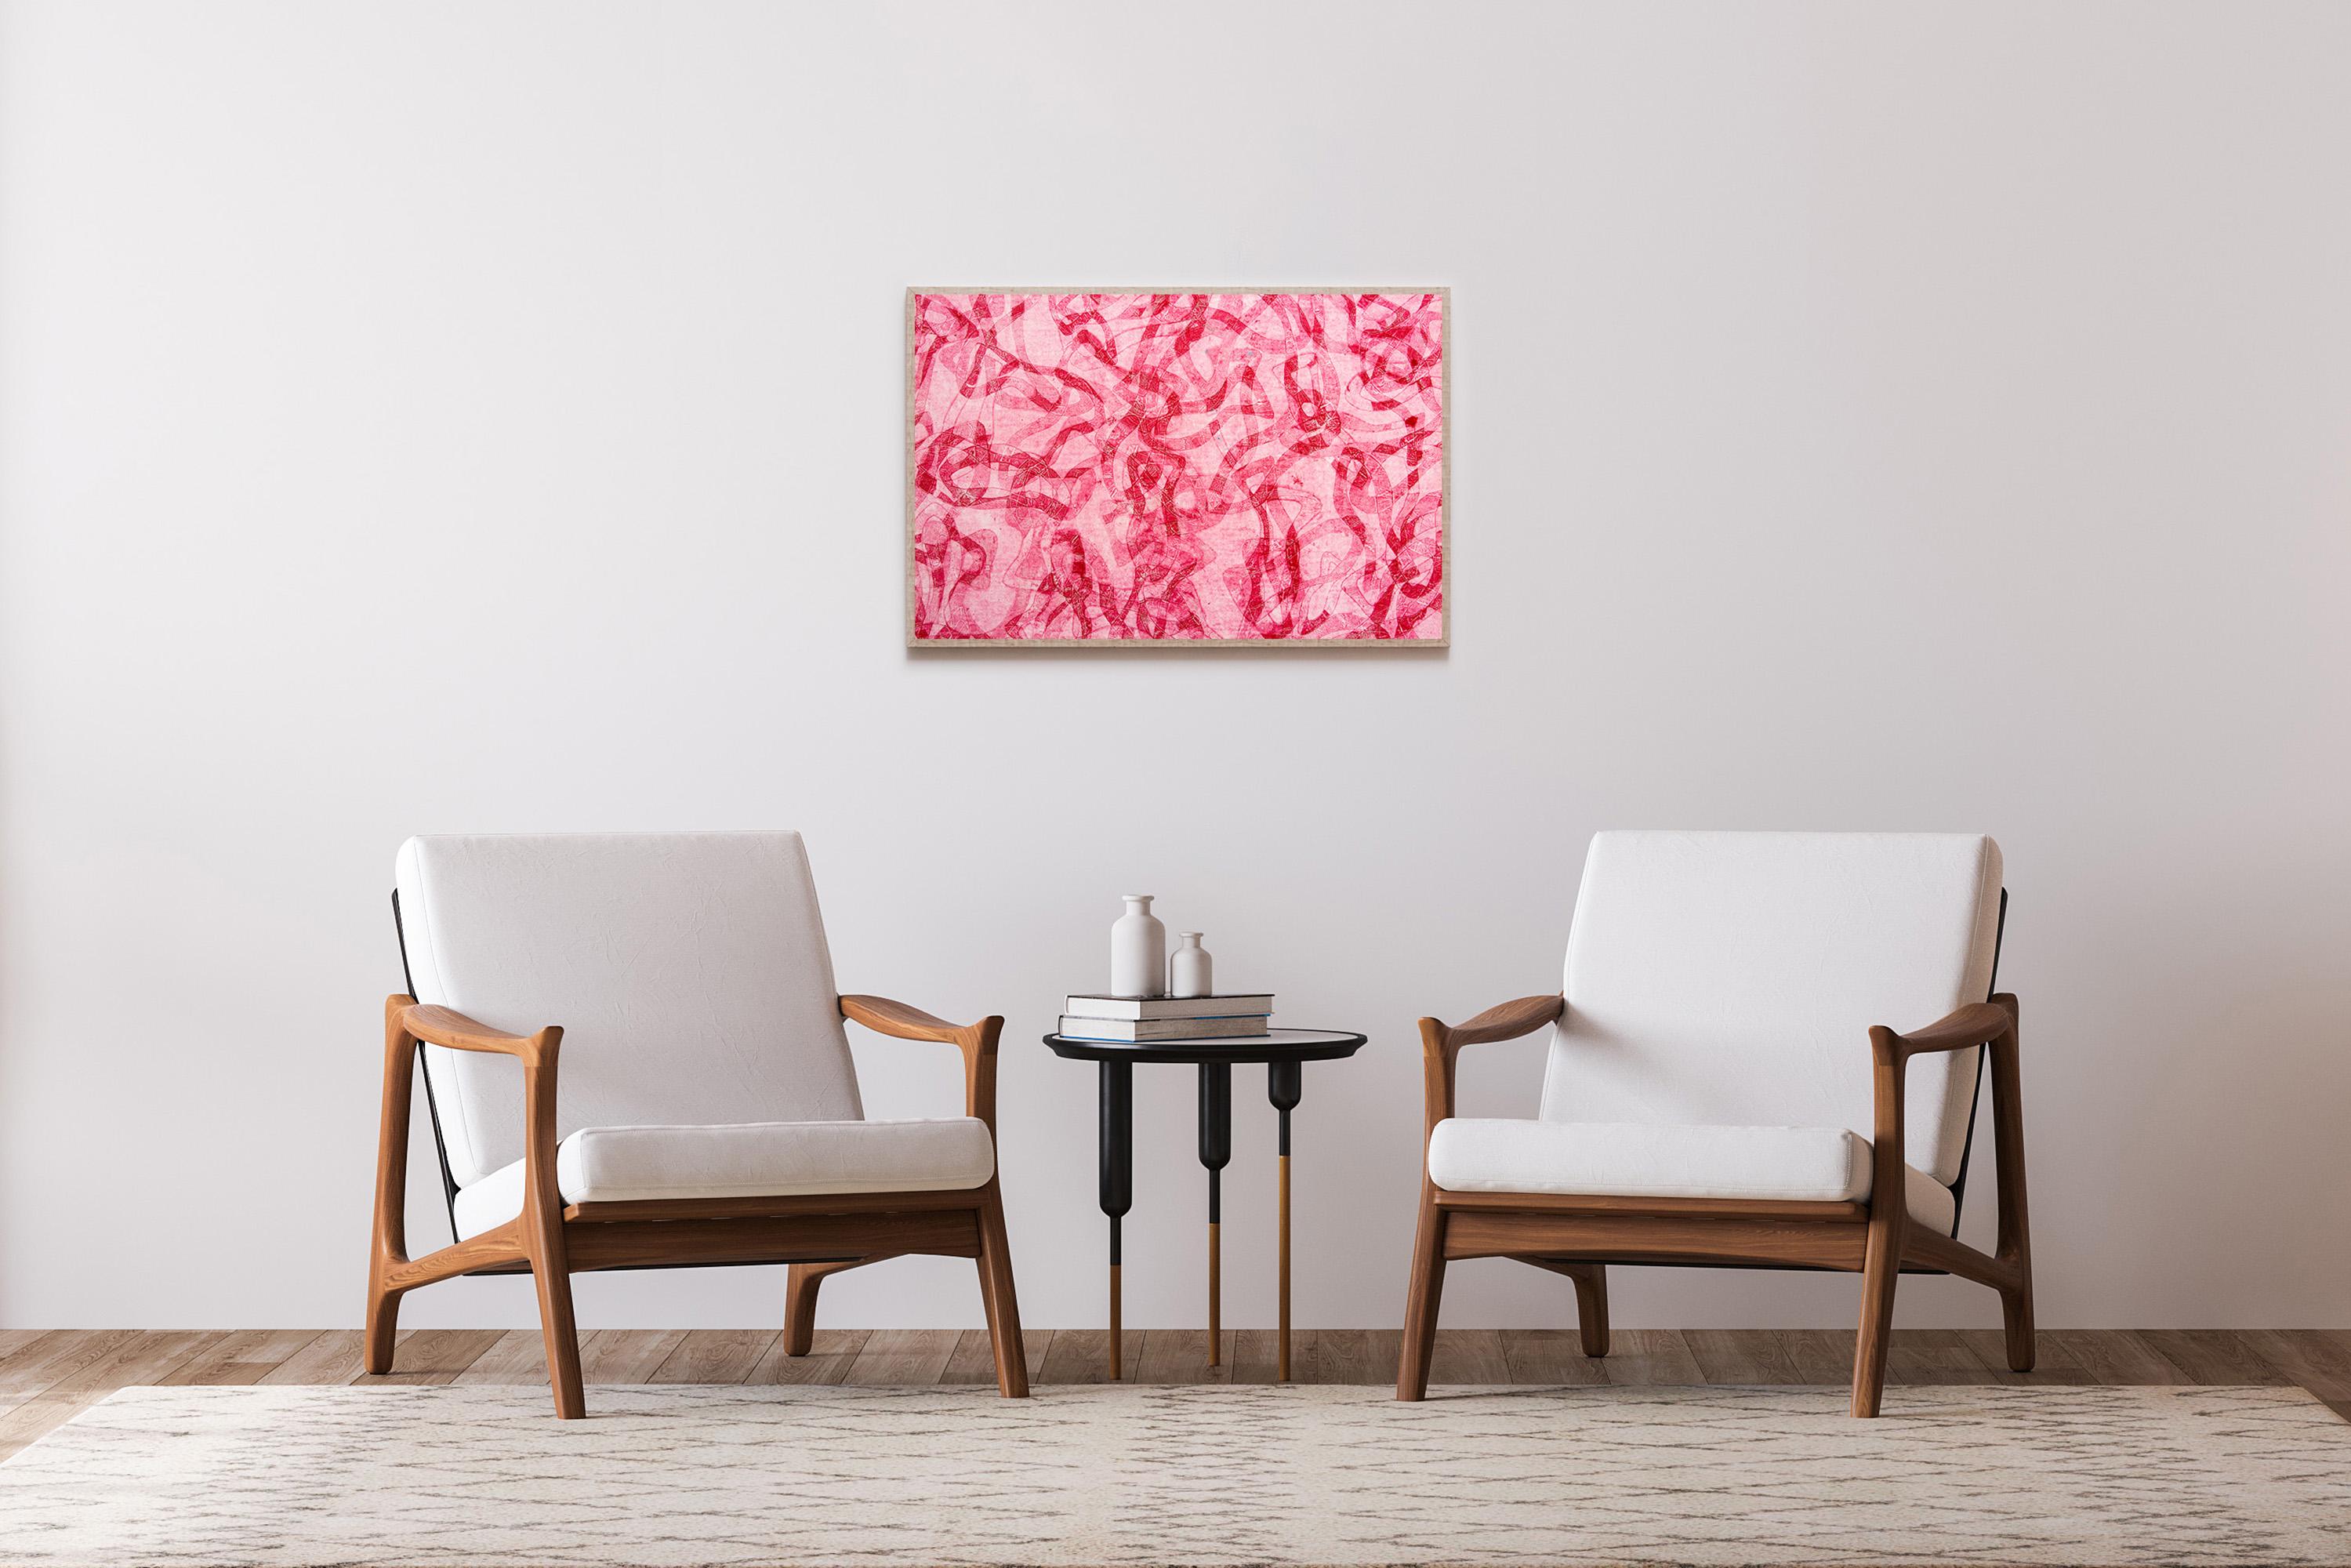 Tonalité rouge, peinture figurative abstraite représentant des poissons des mers rouges sur papier  - Painting de Enric Servera